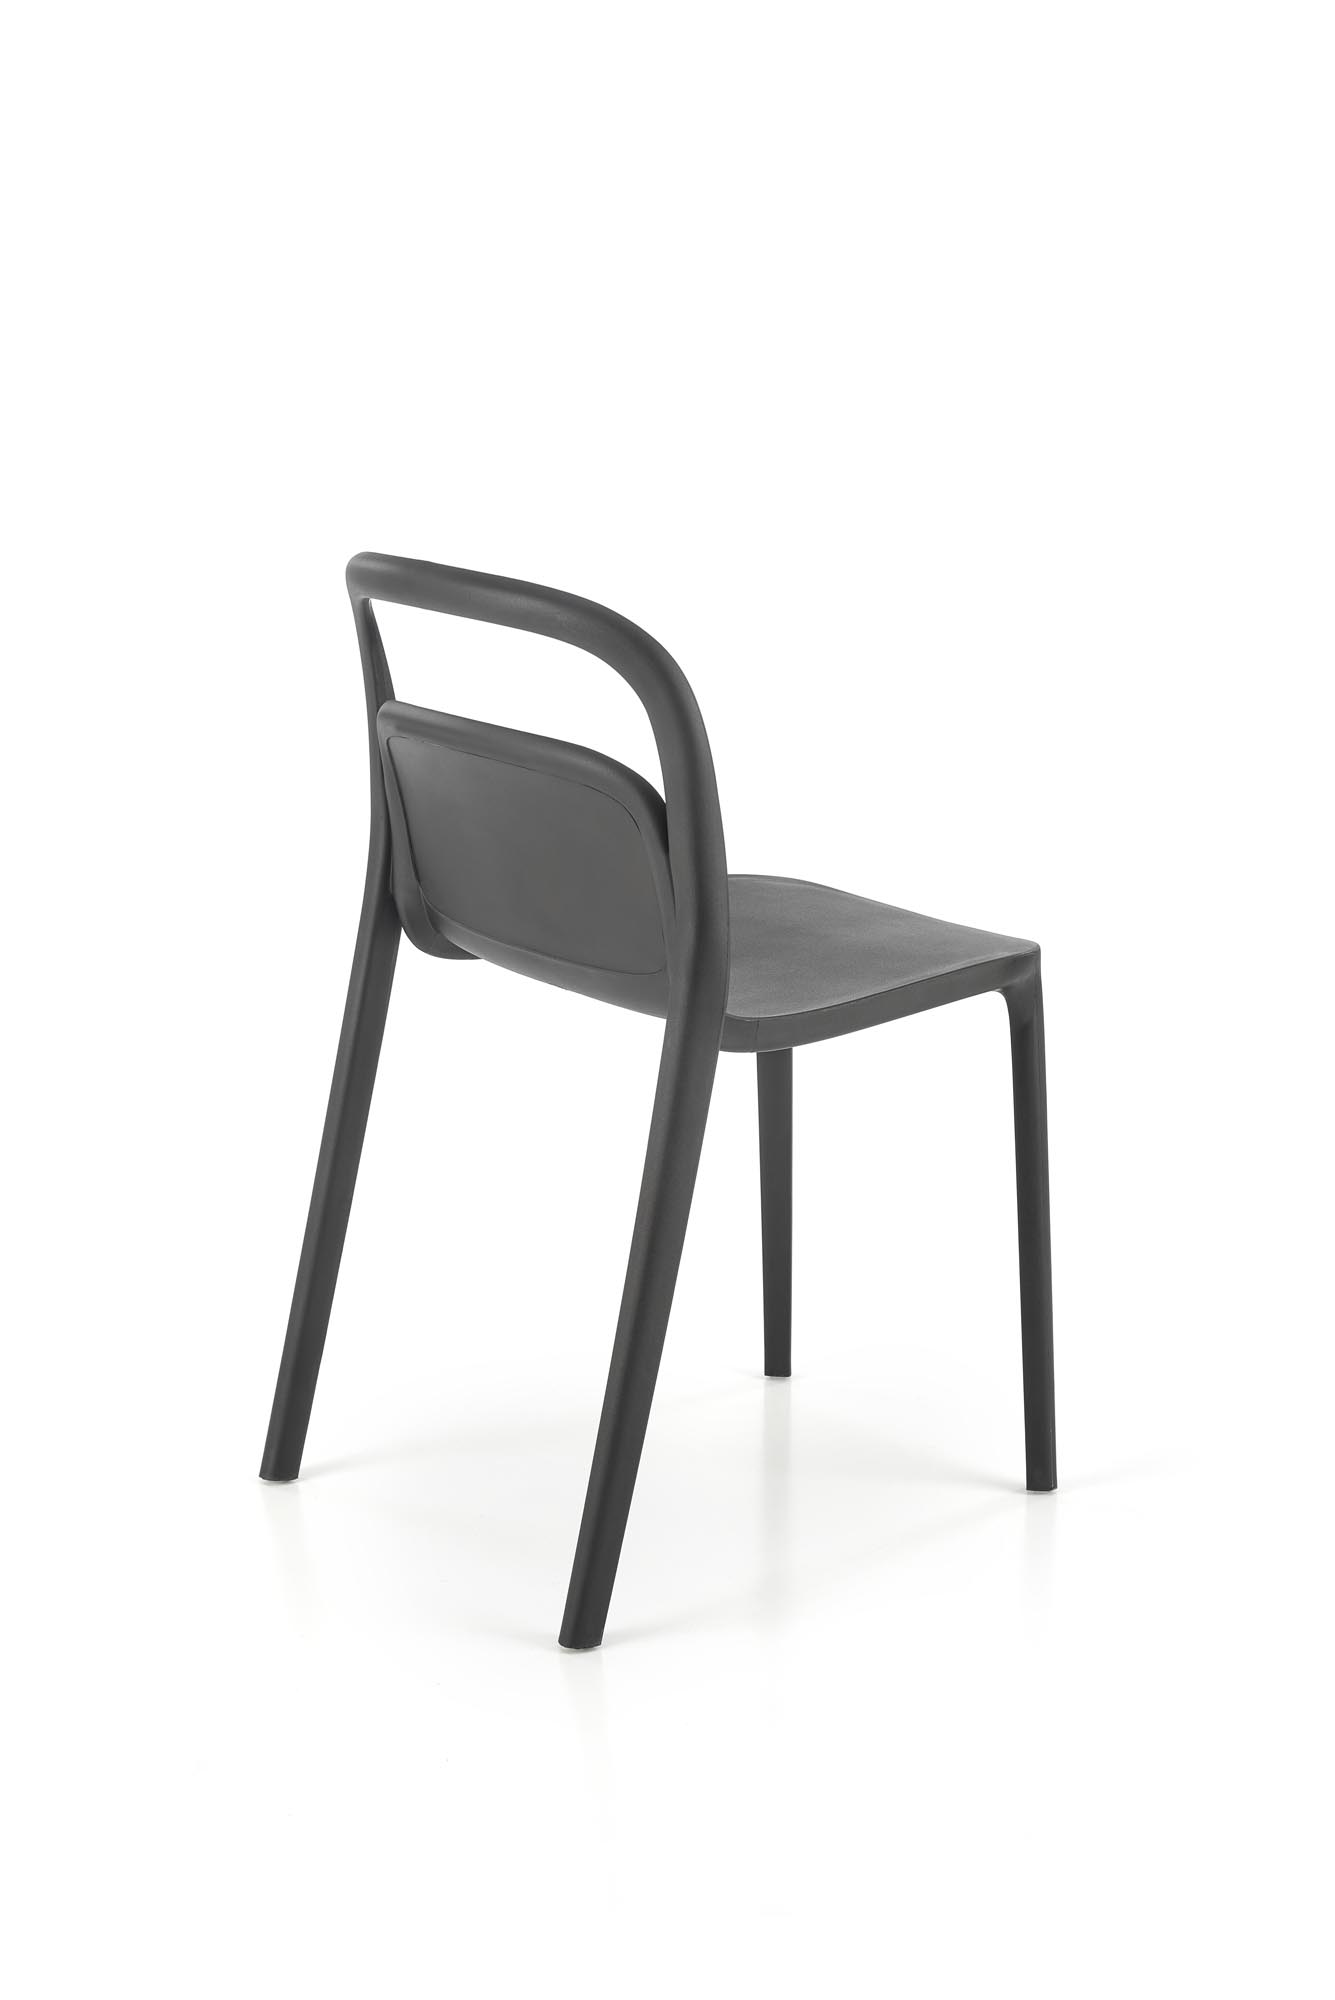 Scaune din plastic K490 Negru(1p=4buc) Židle z tworzywa sztucznego k490 - Černý